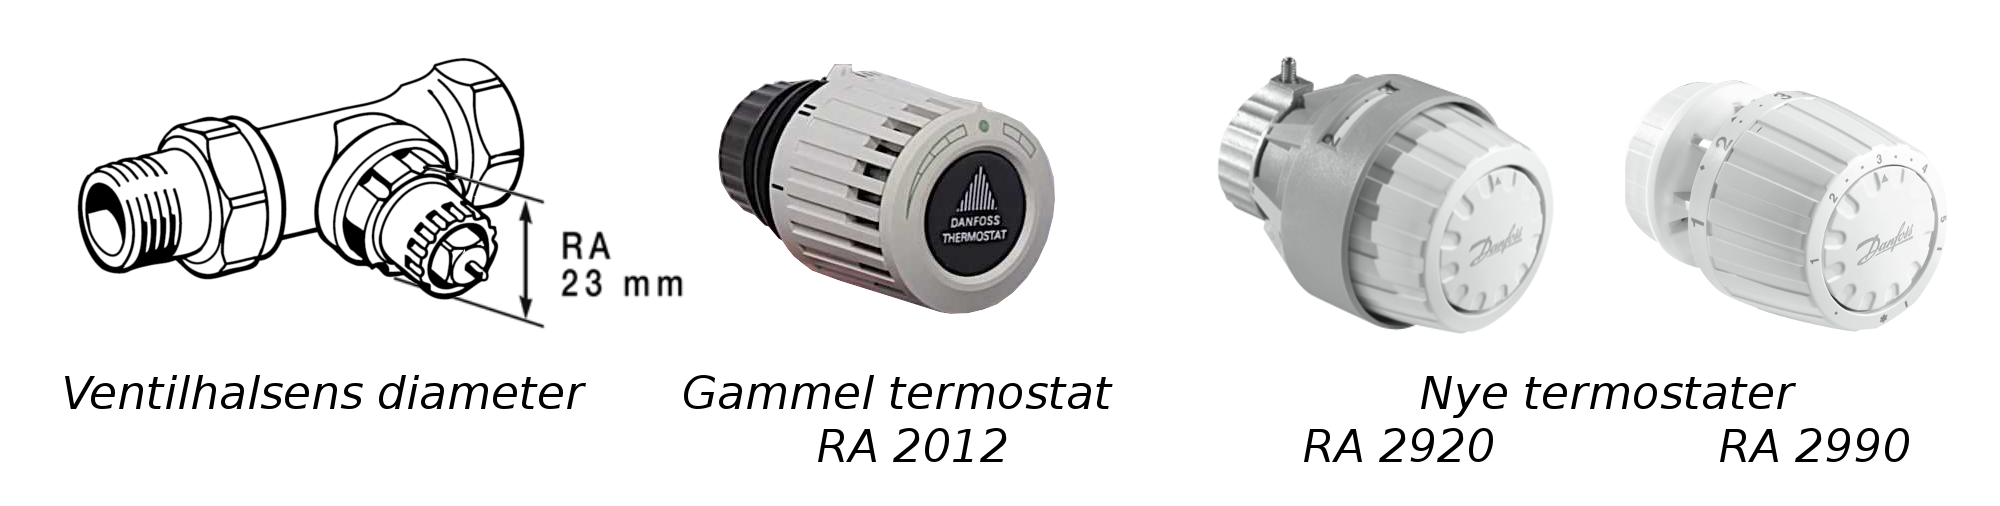 Danfoss – RA termostat fjernføler, hvid ‒